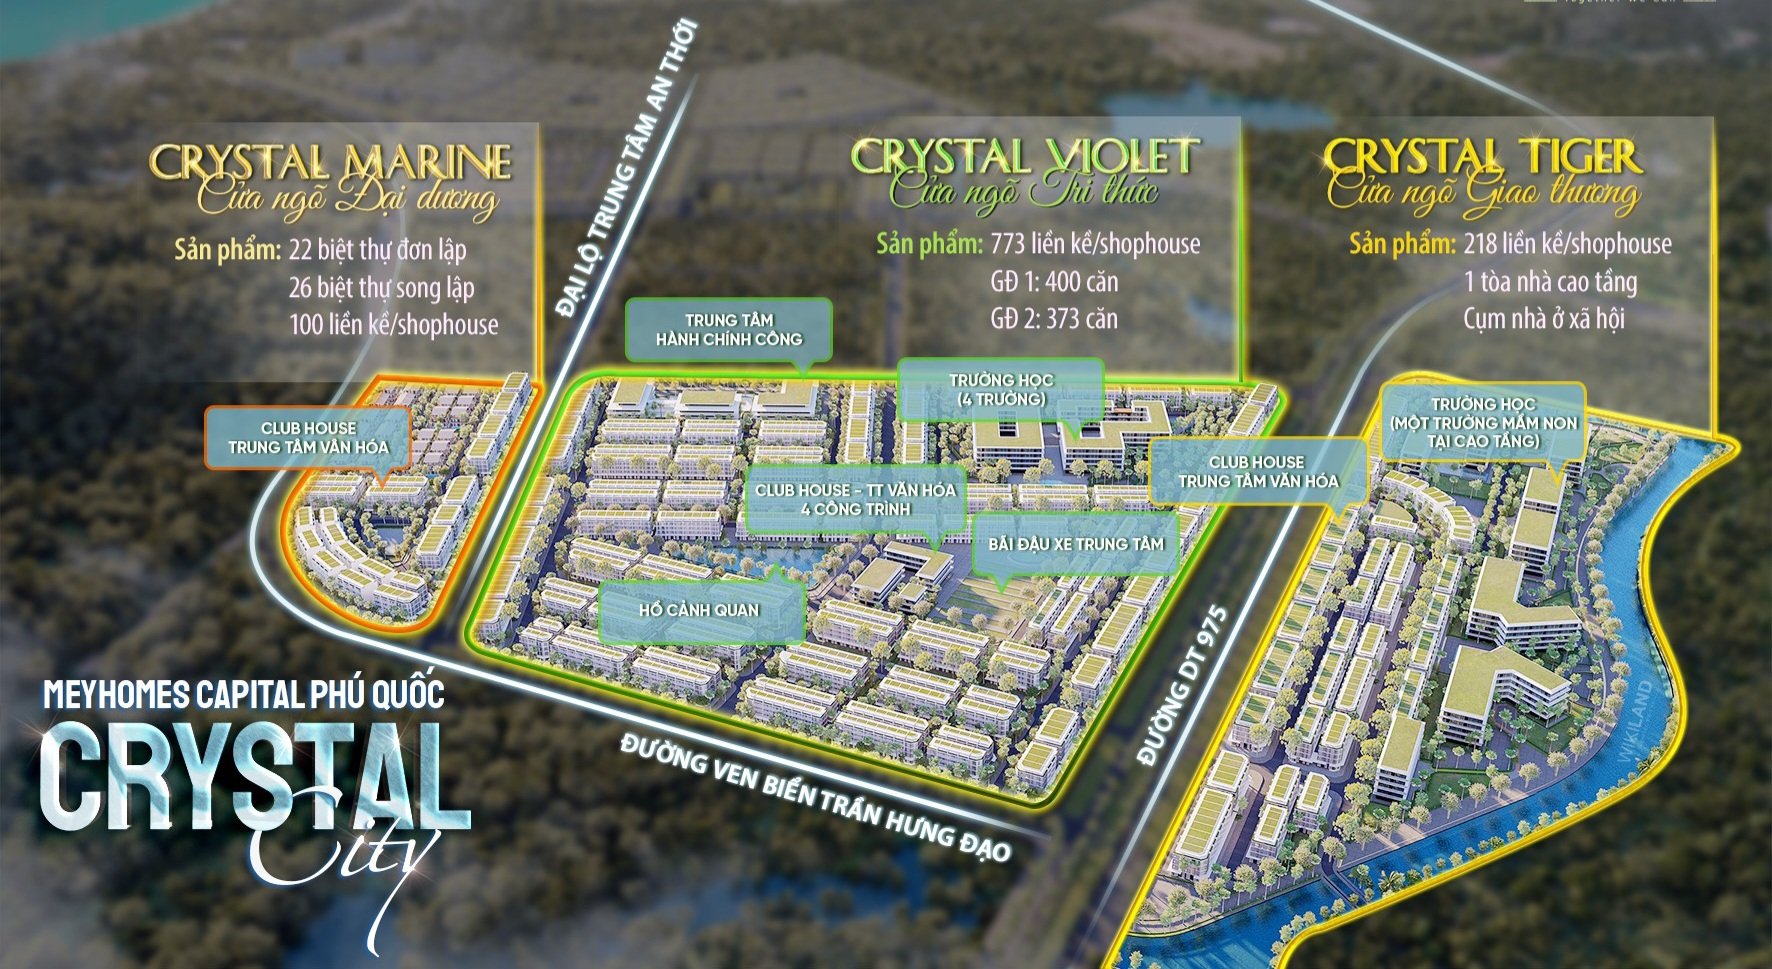 Mảnh ghép thứ 2 mang tên Crystal City